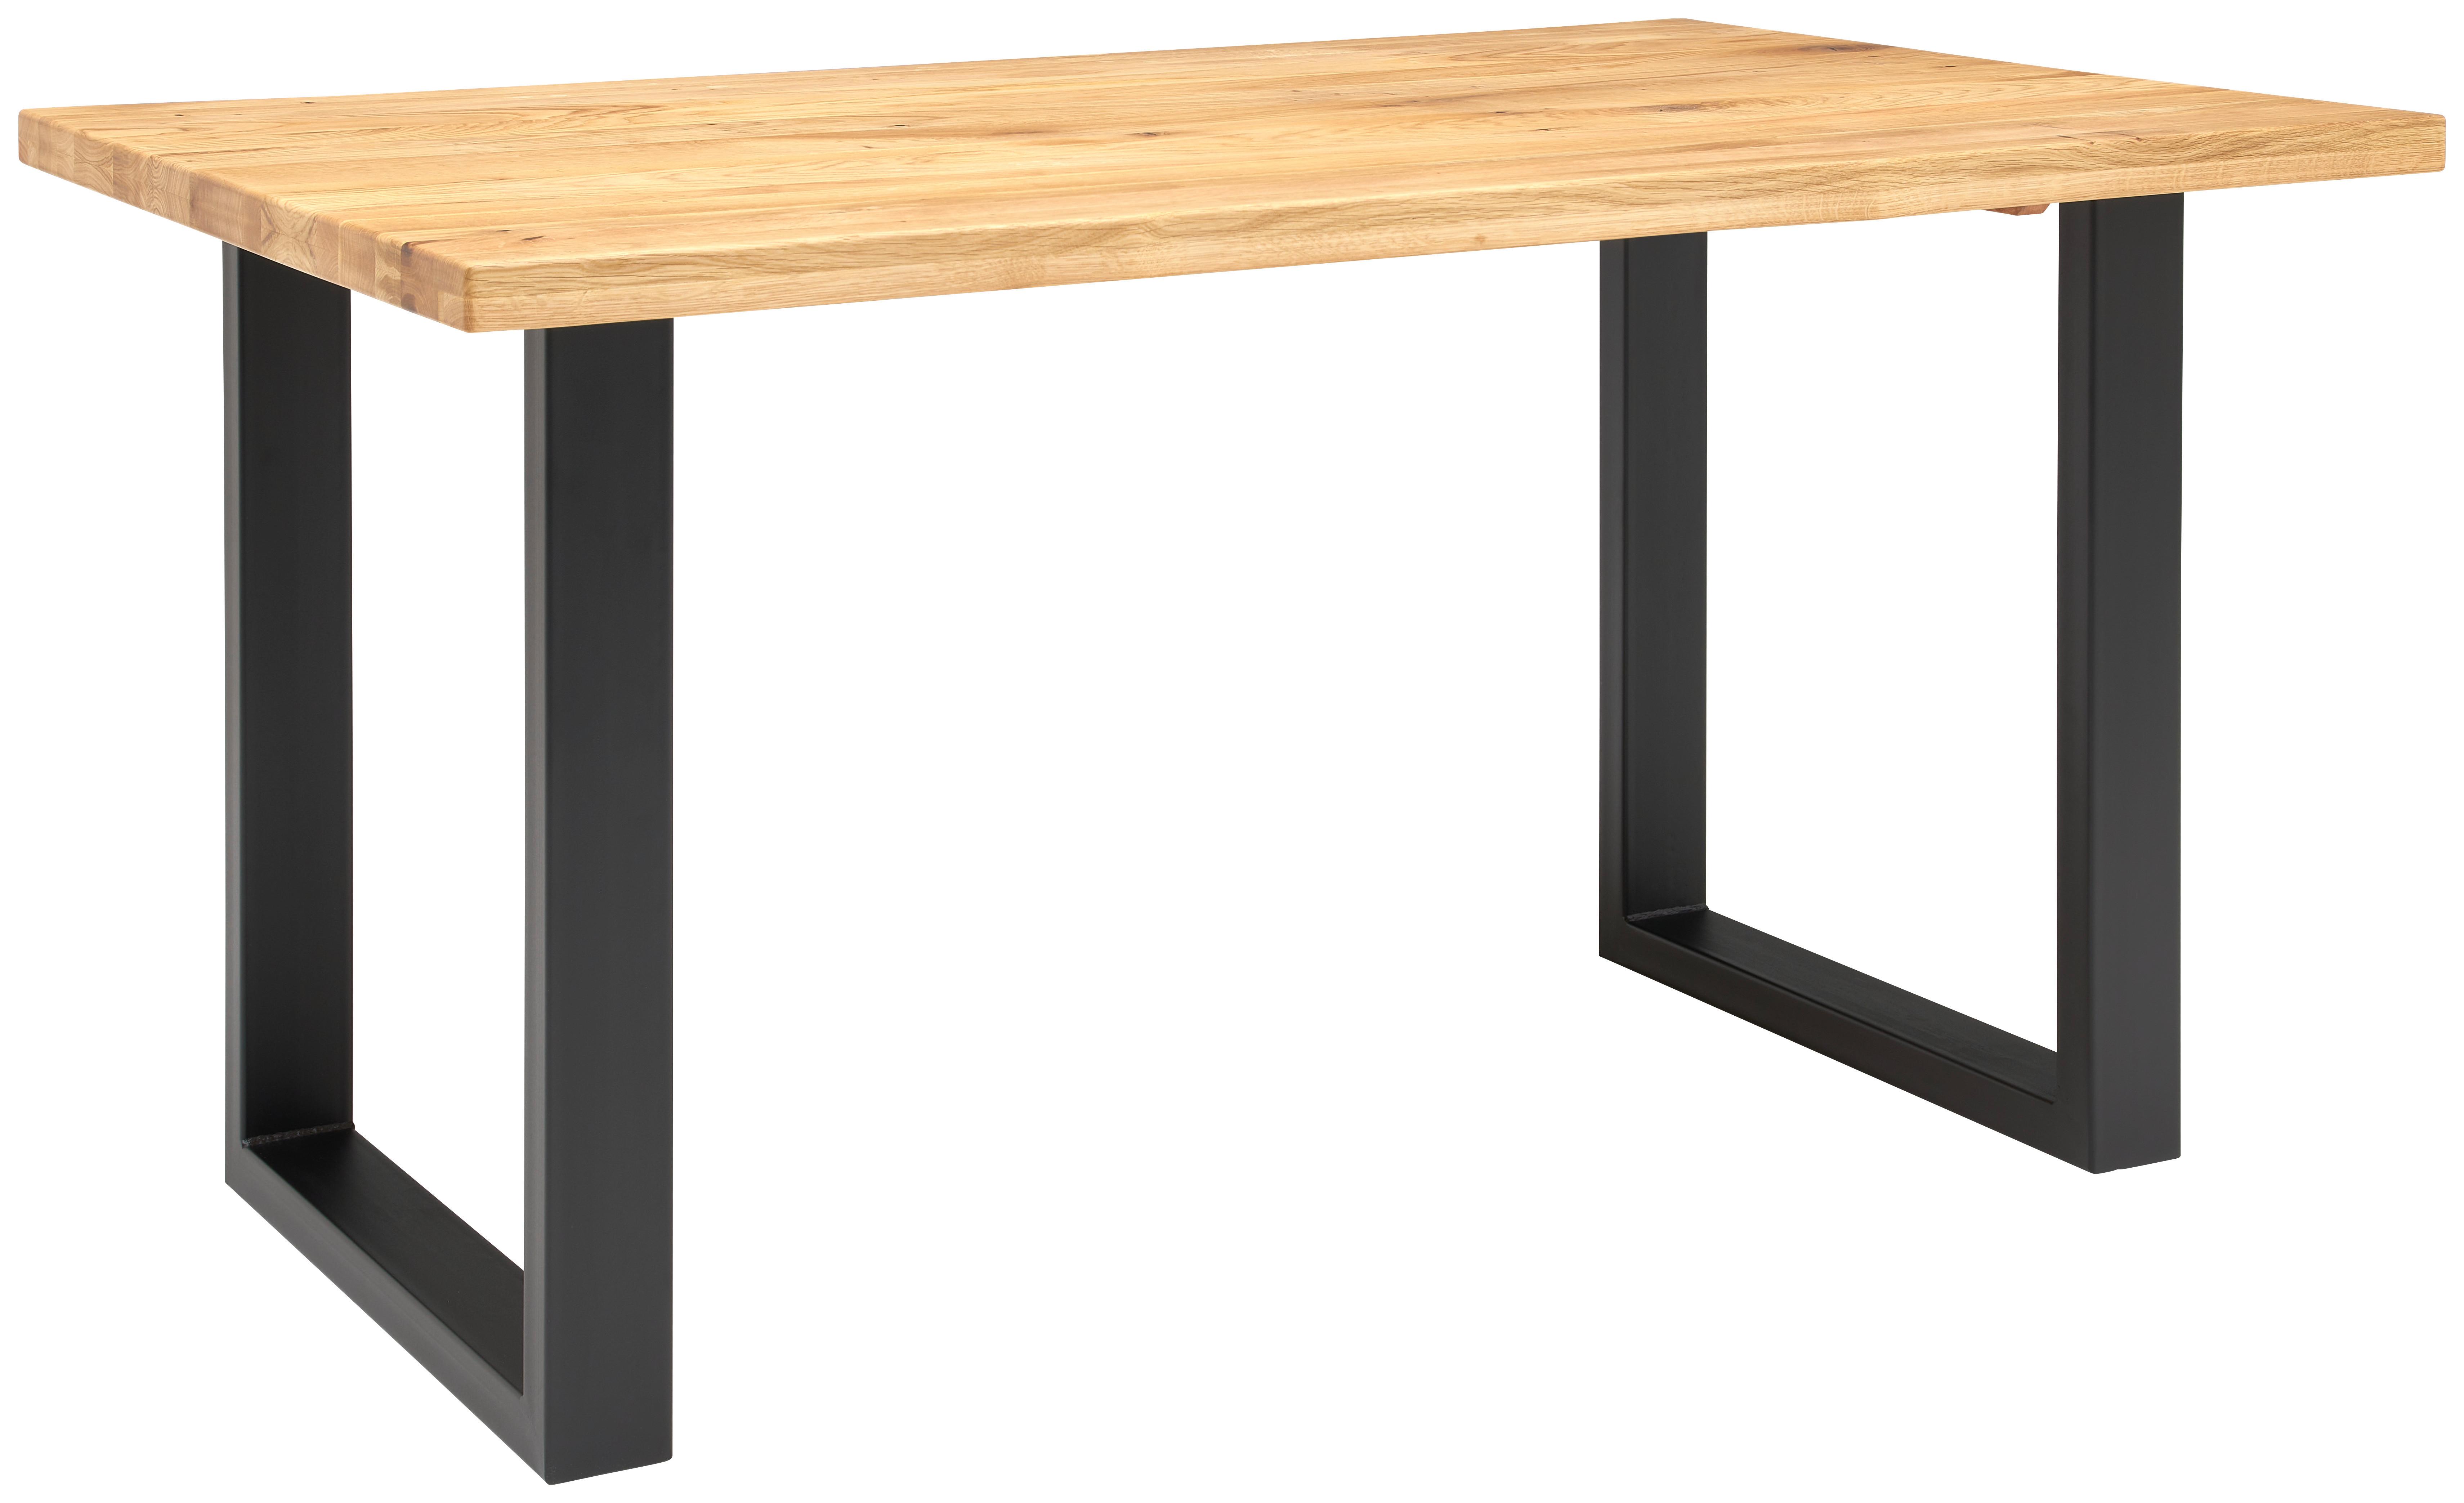 Jídelní Stůl Rockford 140 - barvy dubu, Konvenční, kov/dřevo (140/76/90cm)